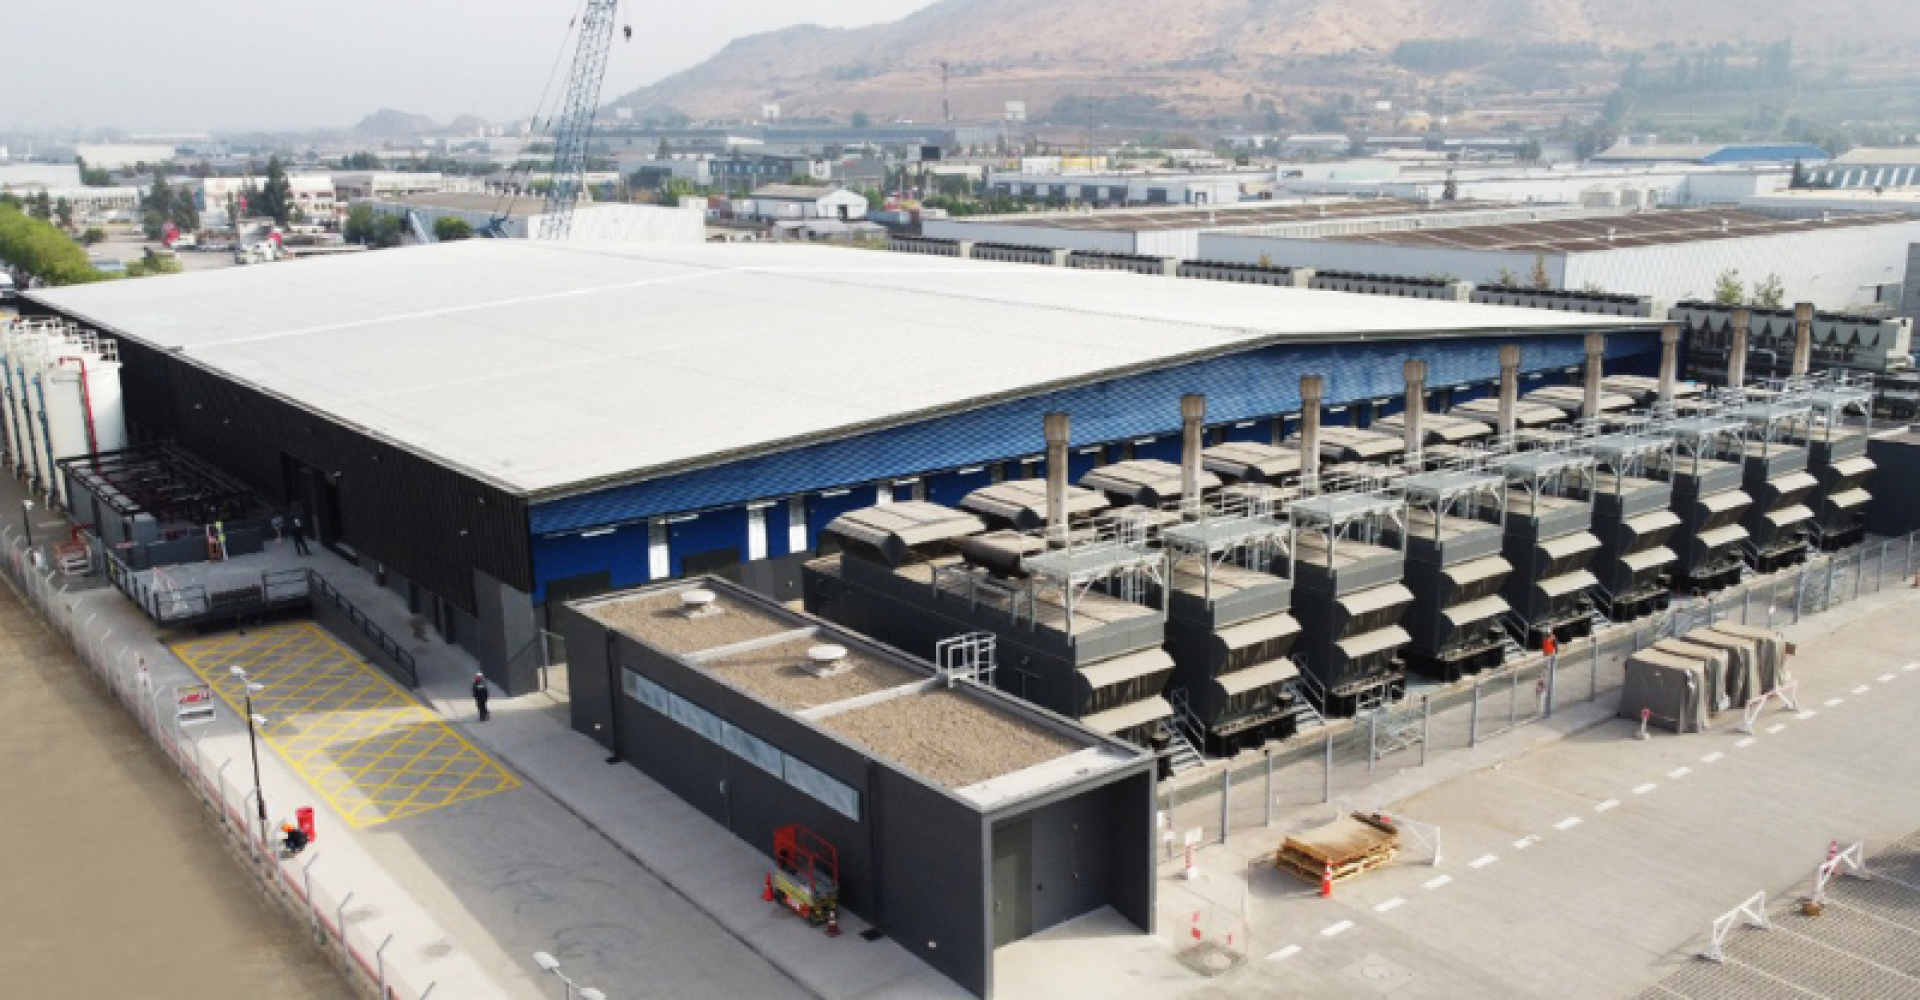 Ascenty inaugura seu primeiro data center no Chile e começa a construção de sua segunda unidade no país